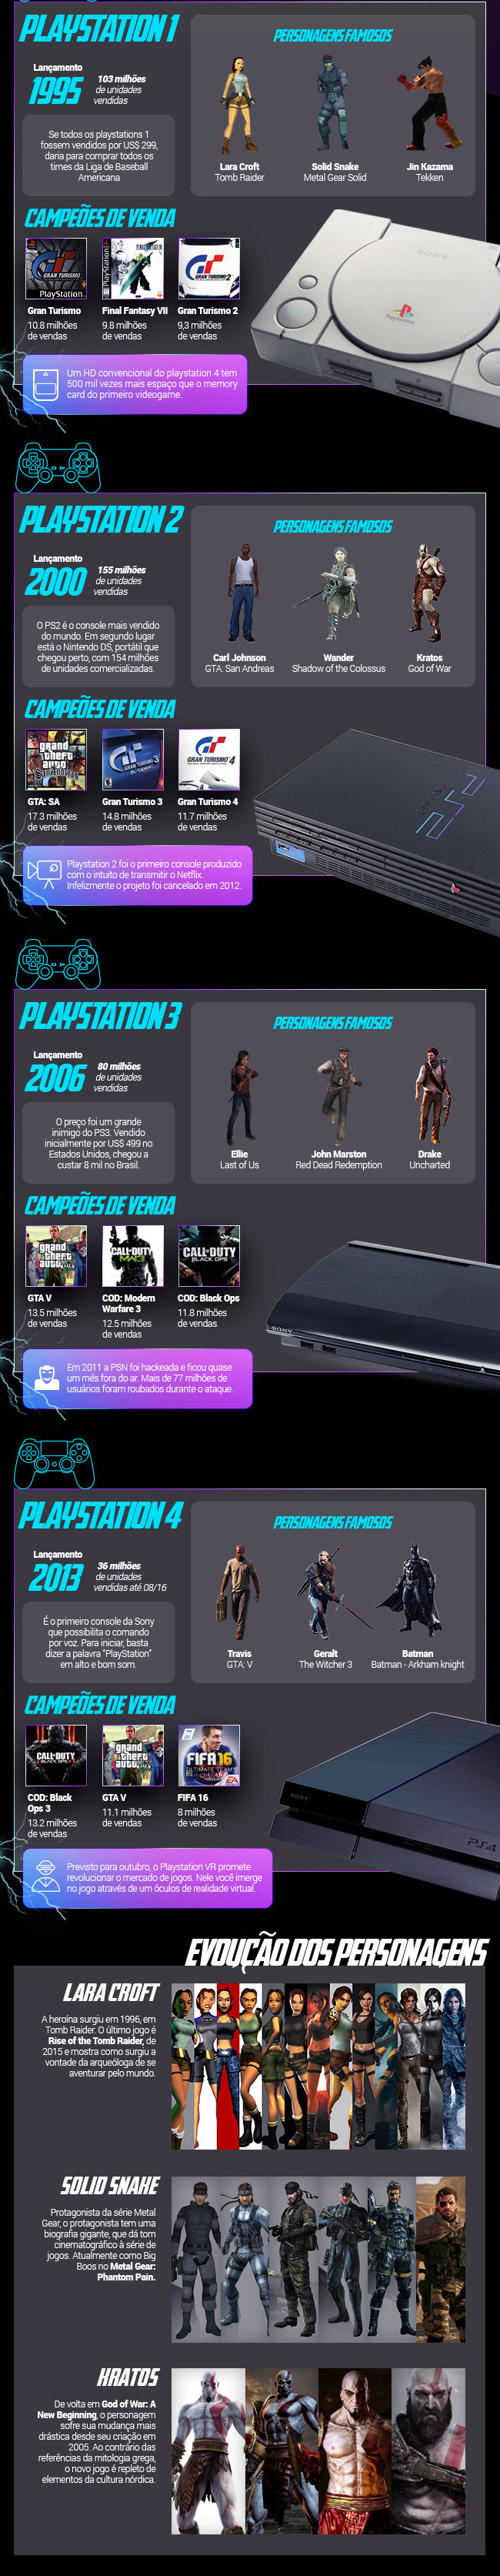 Um infográfico da evolução do Playstation, seus jogos e personagens